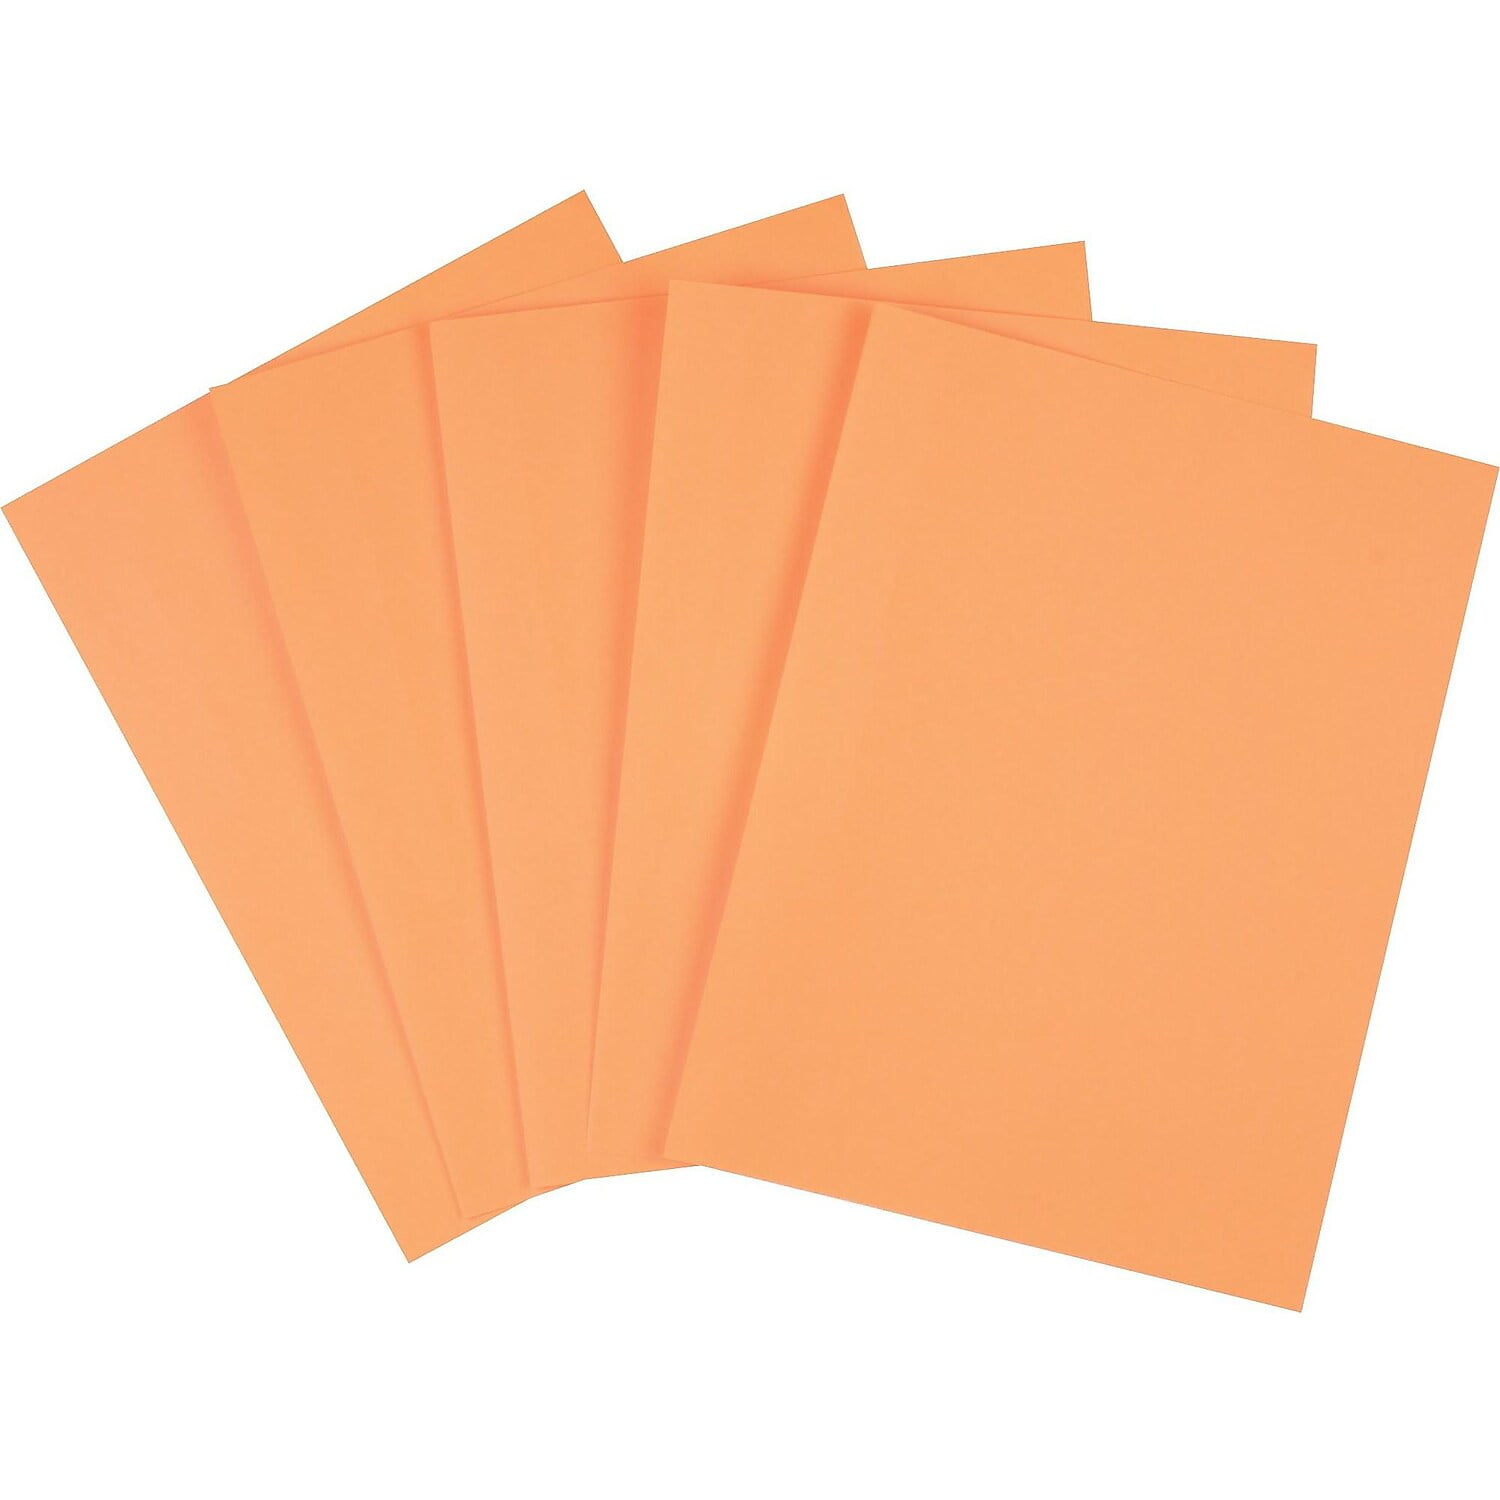 Staples Brights Multipurpose Paper 20 lbs. 8.5 x 11 Orange 500